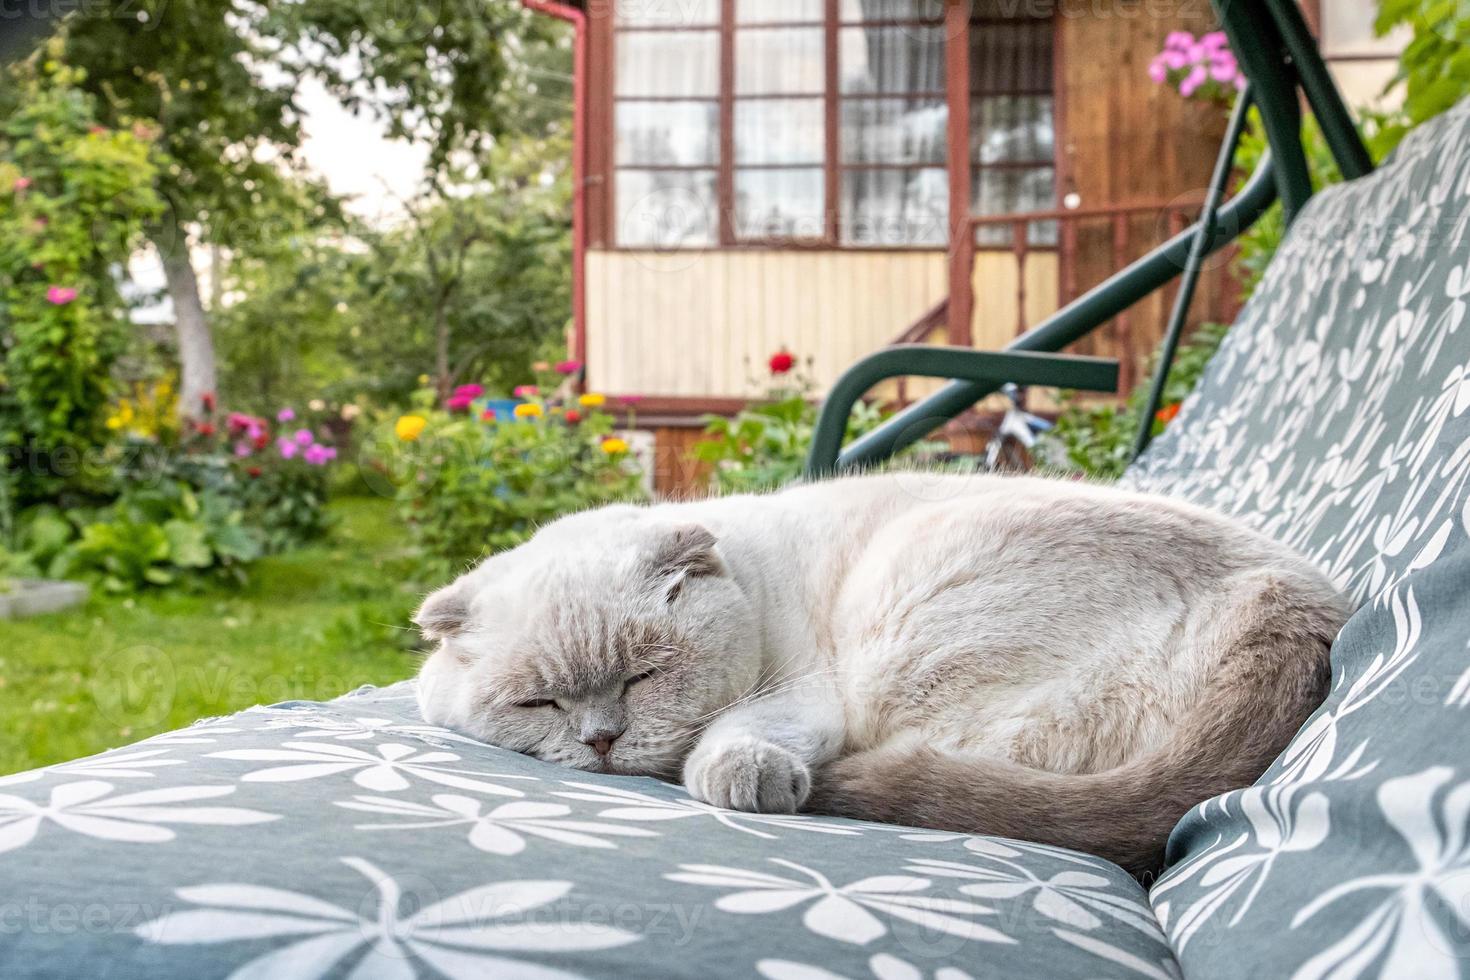 engraçado gato britânico branco doméstico de cabelos curtos dormindo no sofá do balanço do jardim. gatinho descansando e relaxando ao sol ao ar livre no quintal em dia de verão. conceito de cuidados e animais de estimação. foto